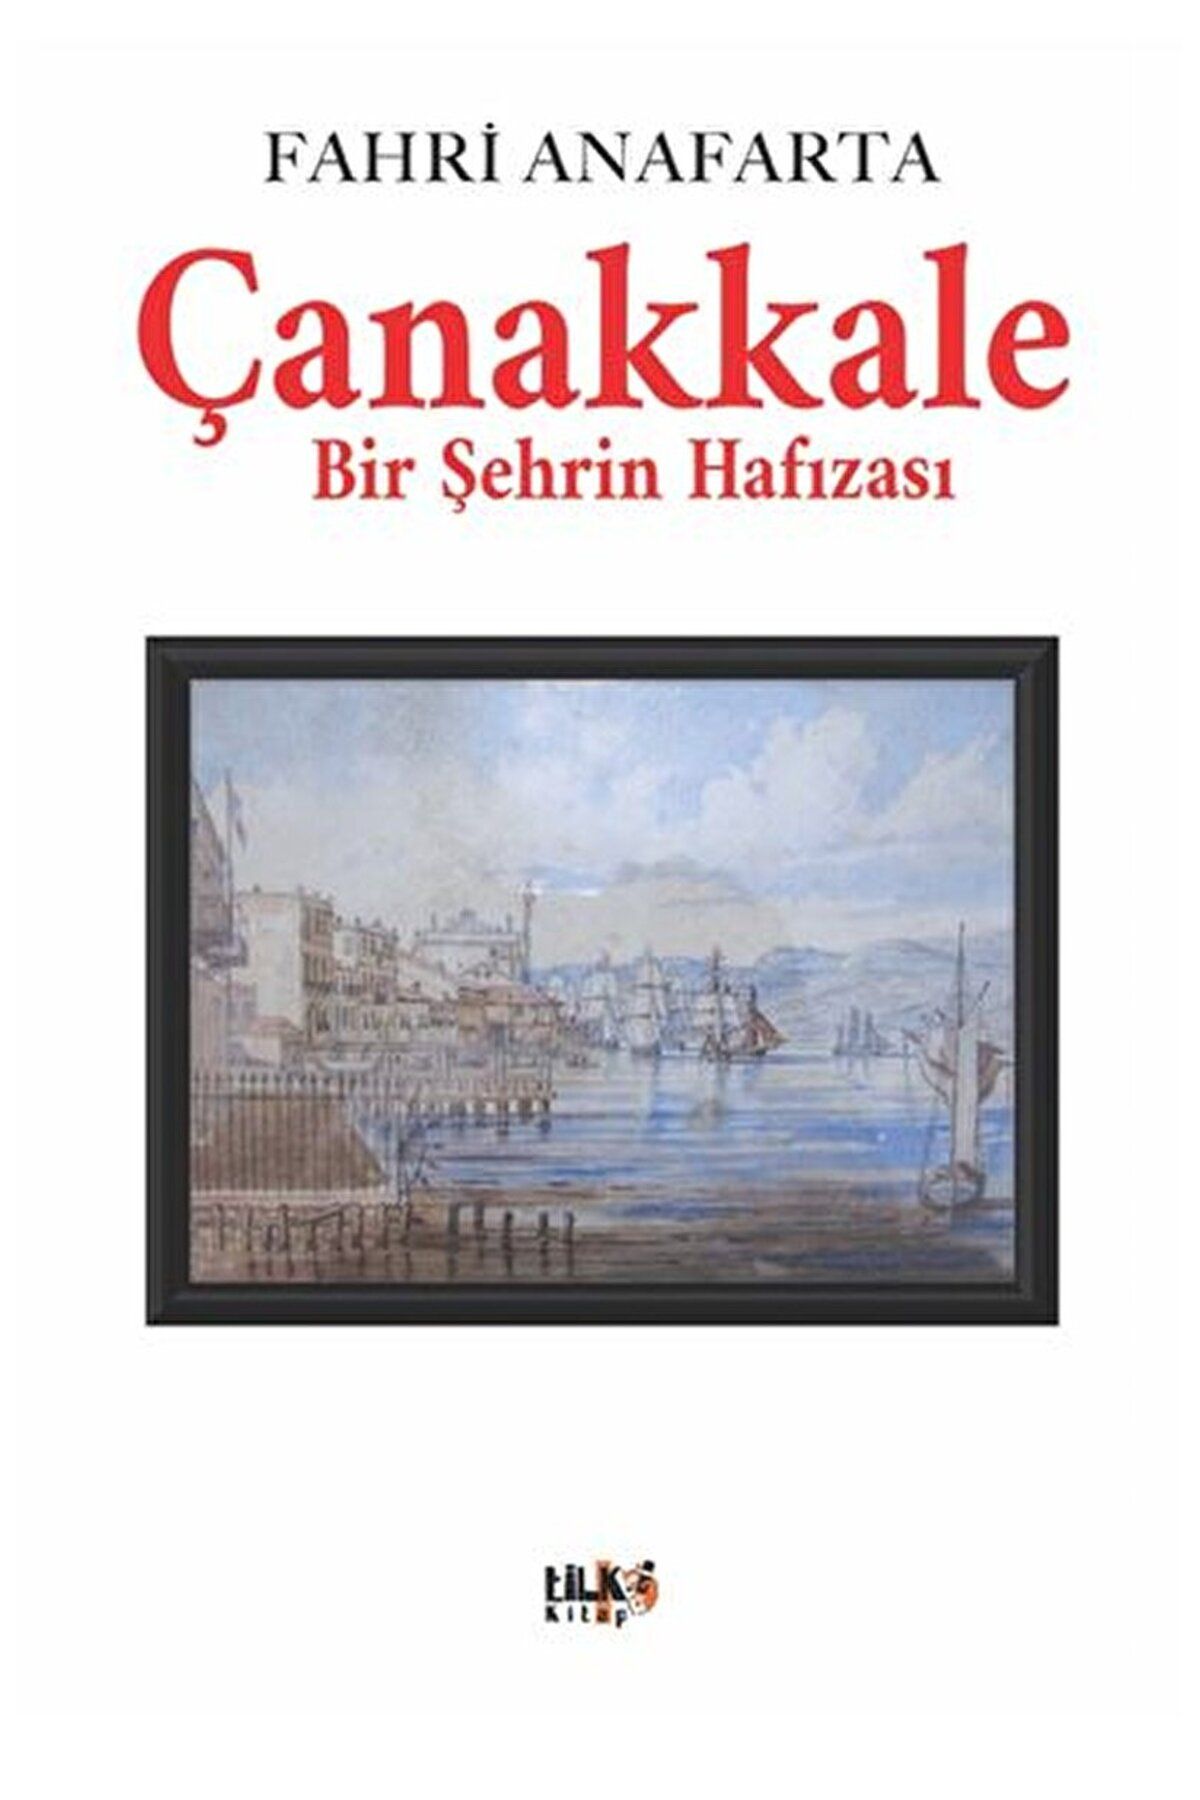 Tilki Kitap Çanakkale Bir Şehrin Hafızası / Fahri Anafarta / Tilki Kitap / 9786258163391